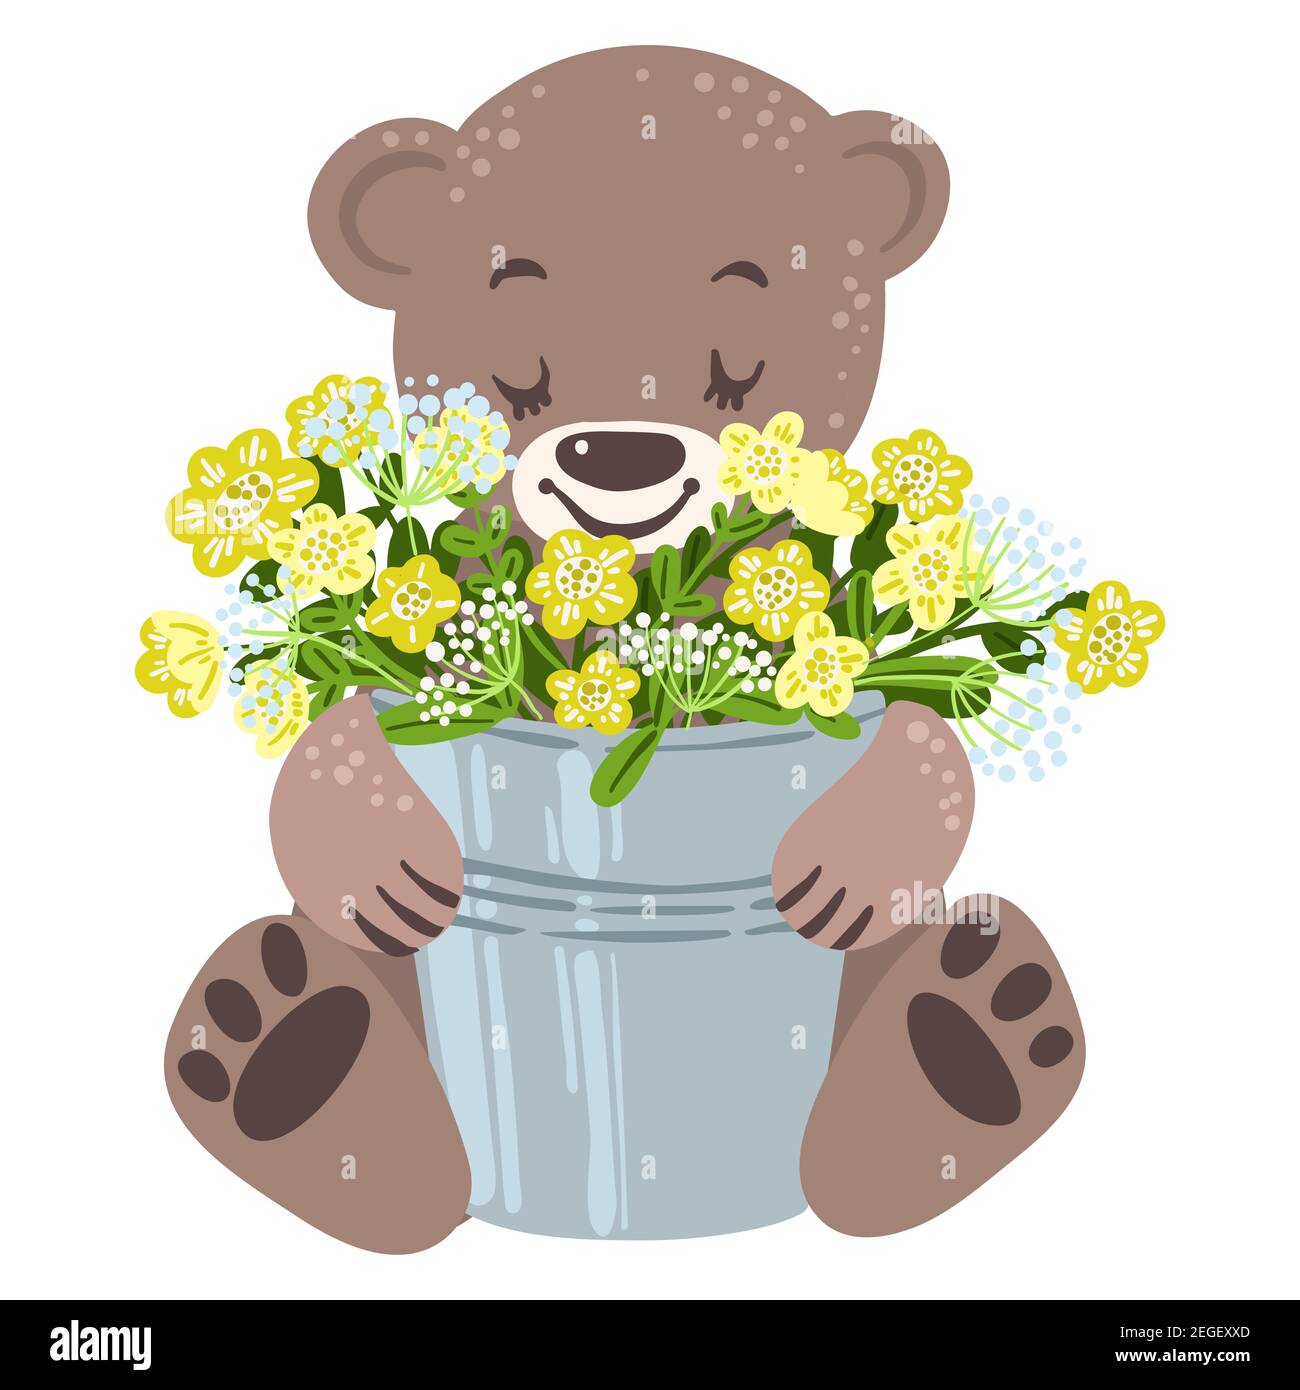 Baby bearand buckerful con fiori gialli primavera, illustrazione vettoriale Illustrazione Vettoriale